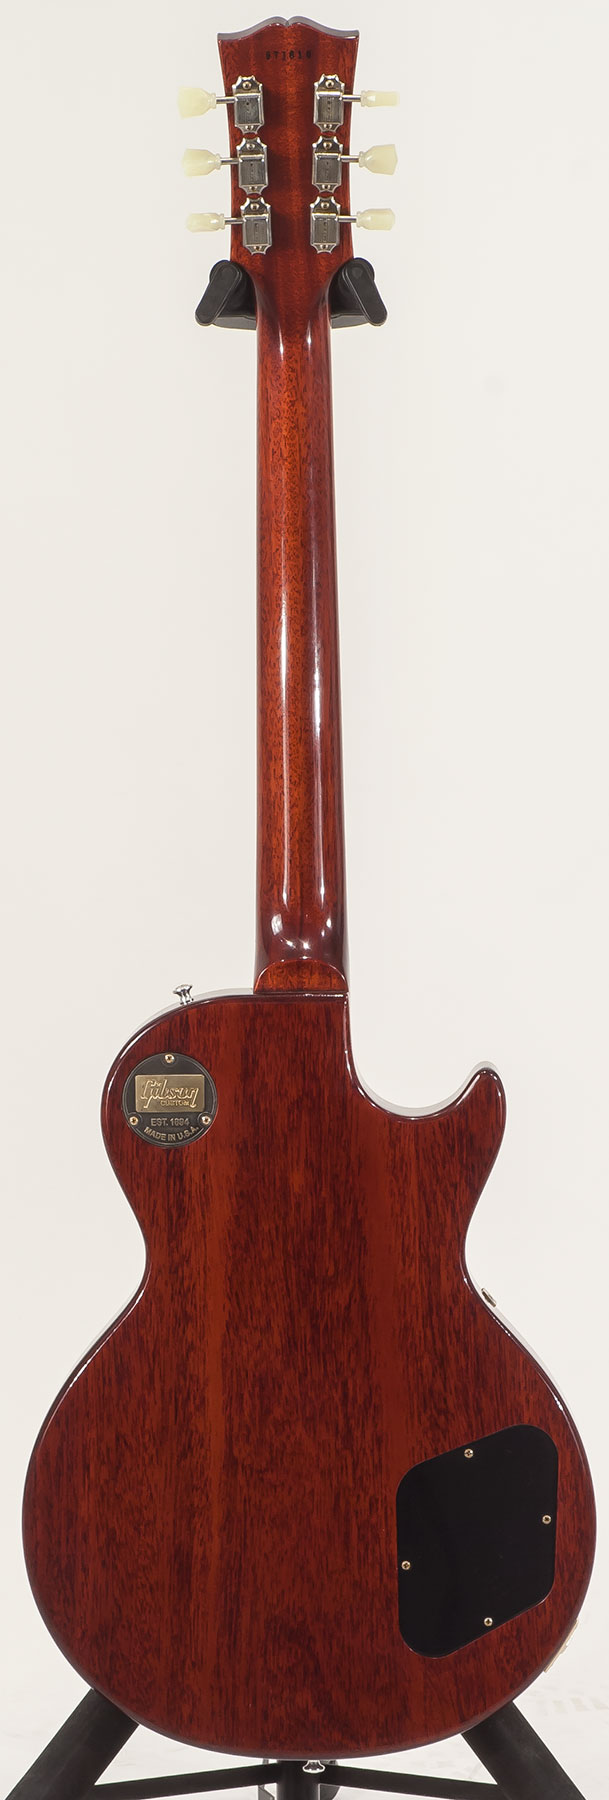 Gibson Custom Shop M2m Les Paul Standard 1959 Lh Gaucher Ltd 2h Ht Rw #971610 - Vos Washed Cherry - E-Gitarre für Linkshänder - Variation 1